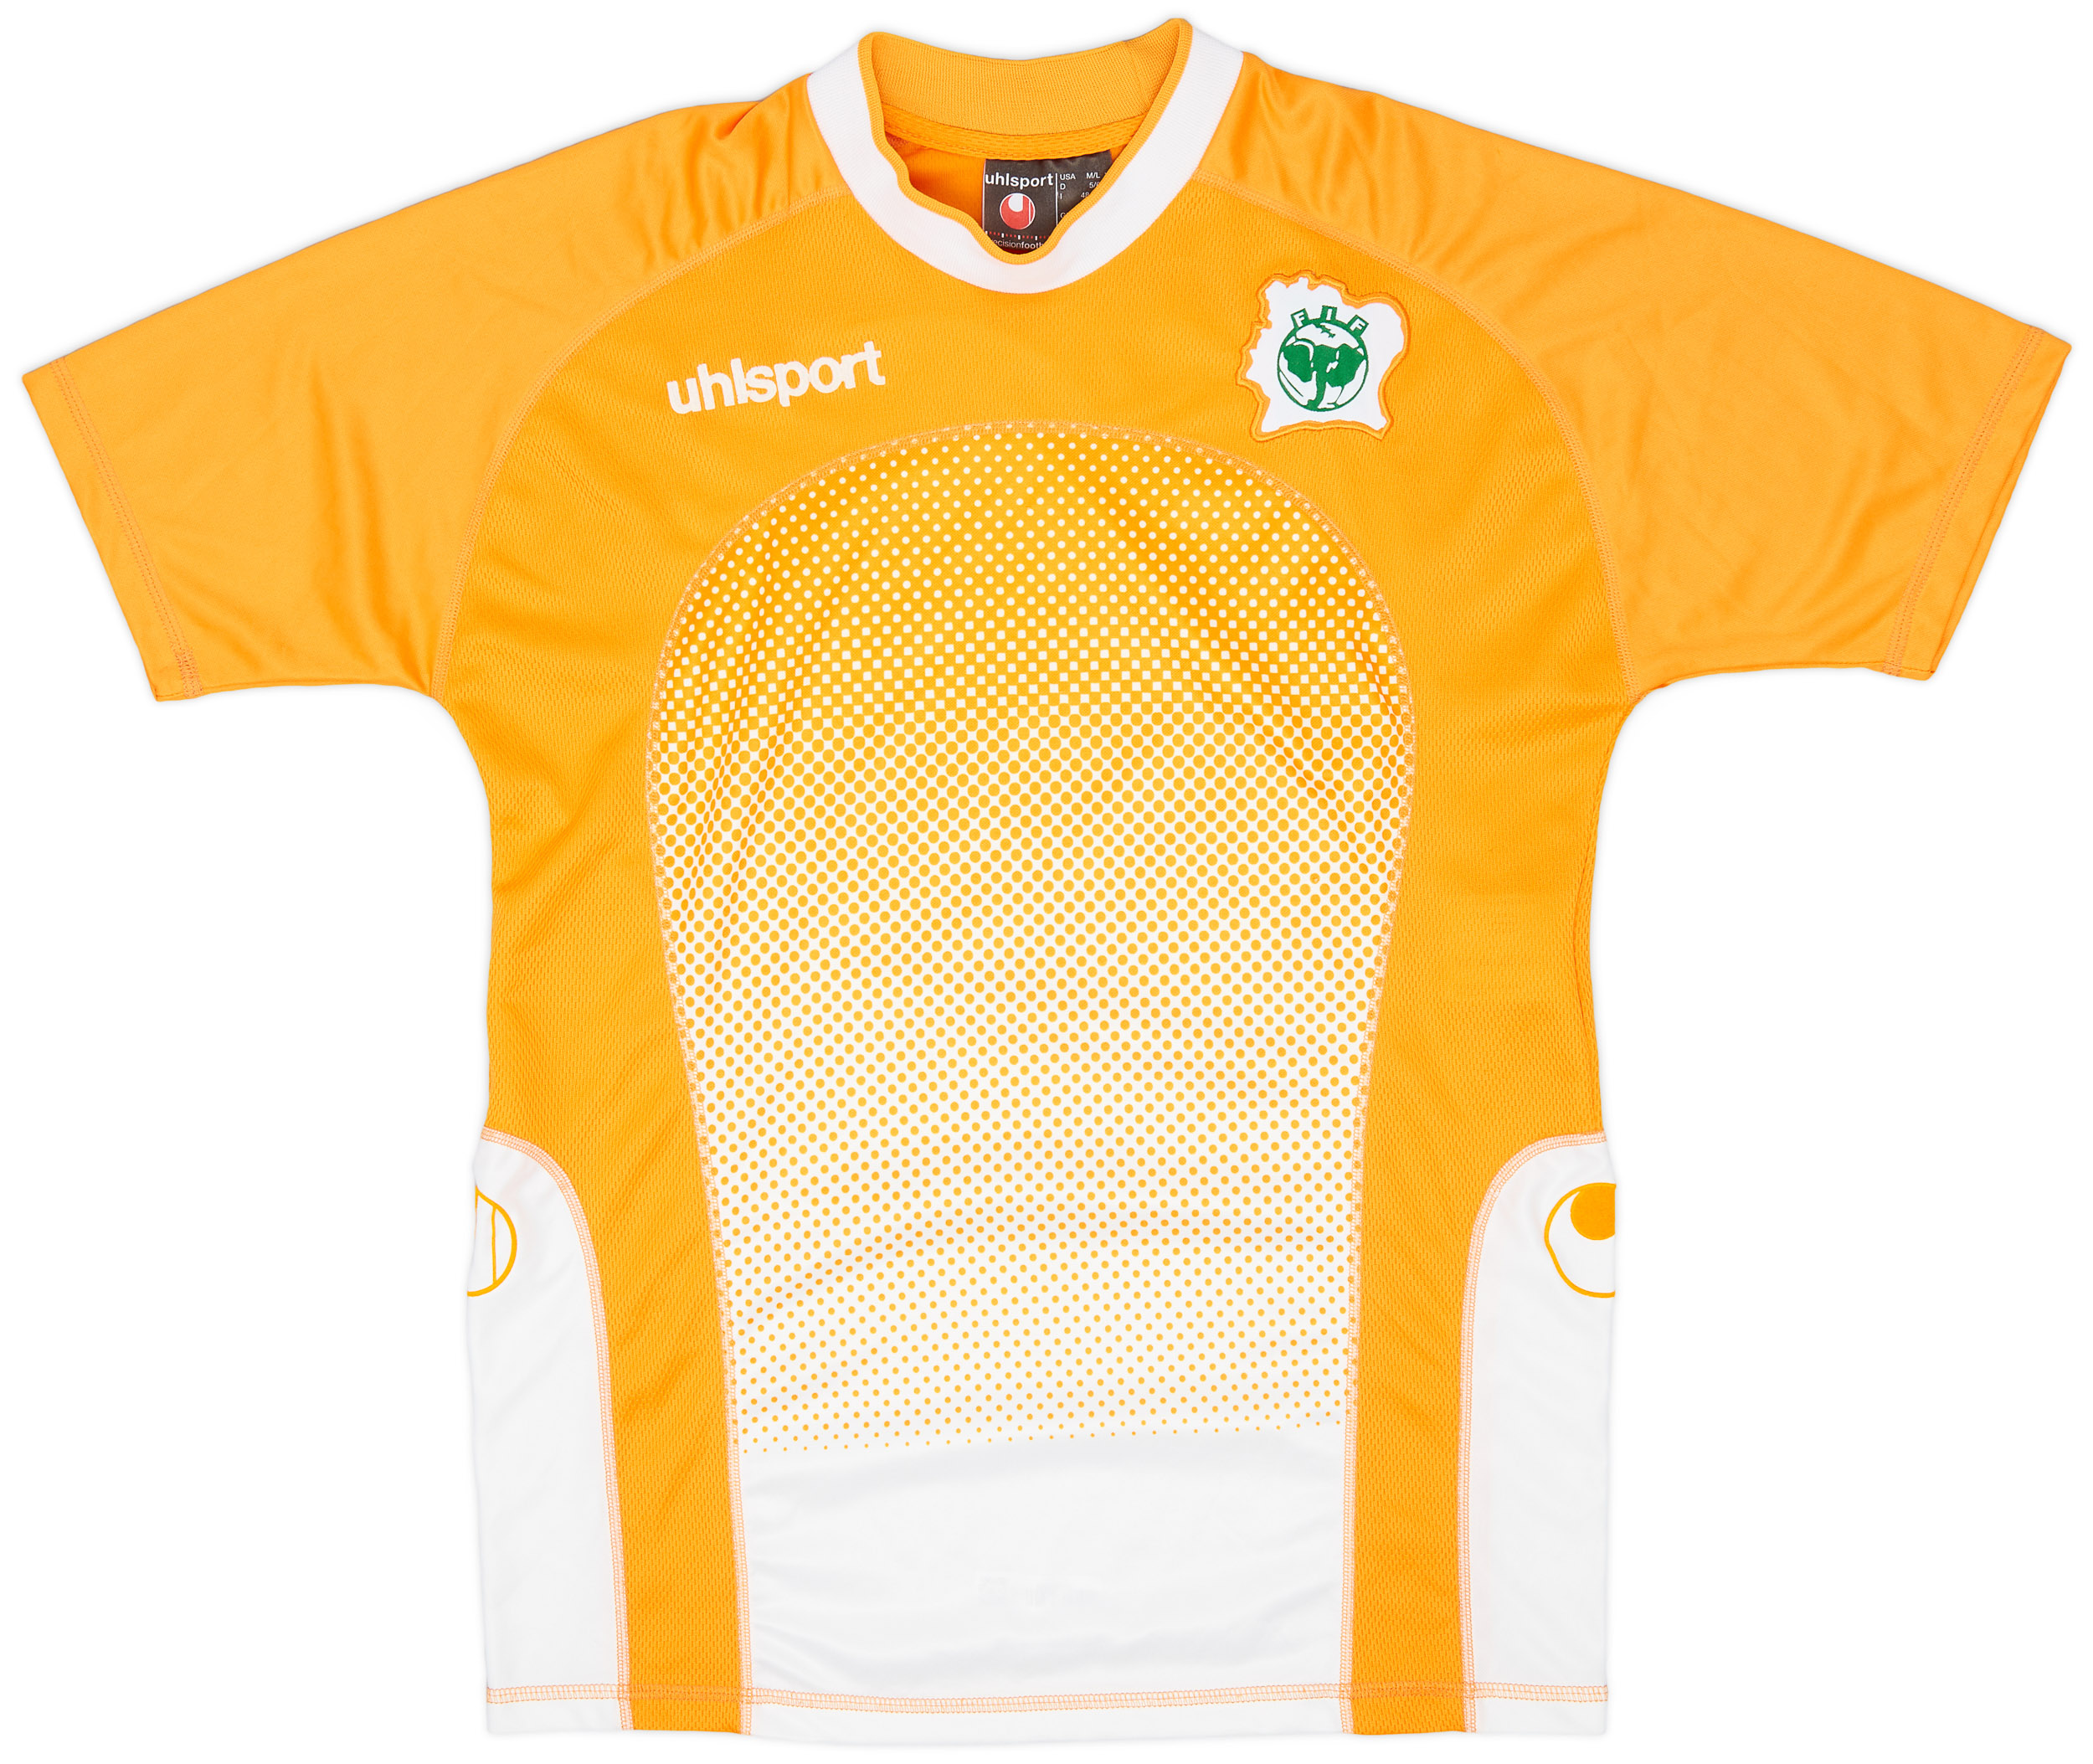 2003-04 Ivory Coast Home Shirt - 9/10 - ()